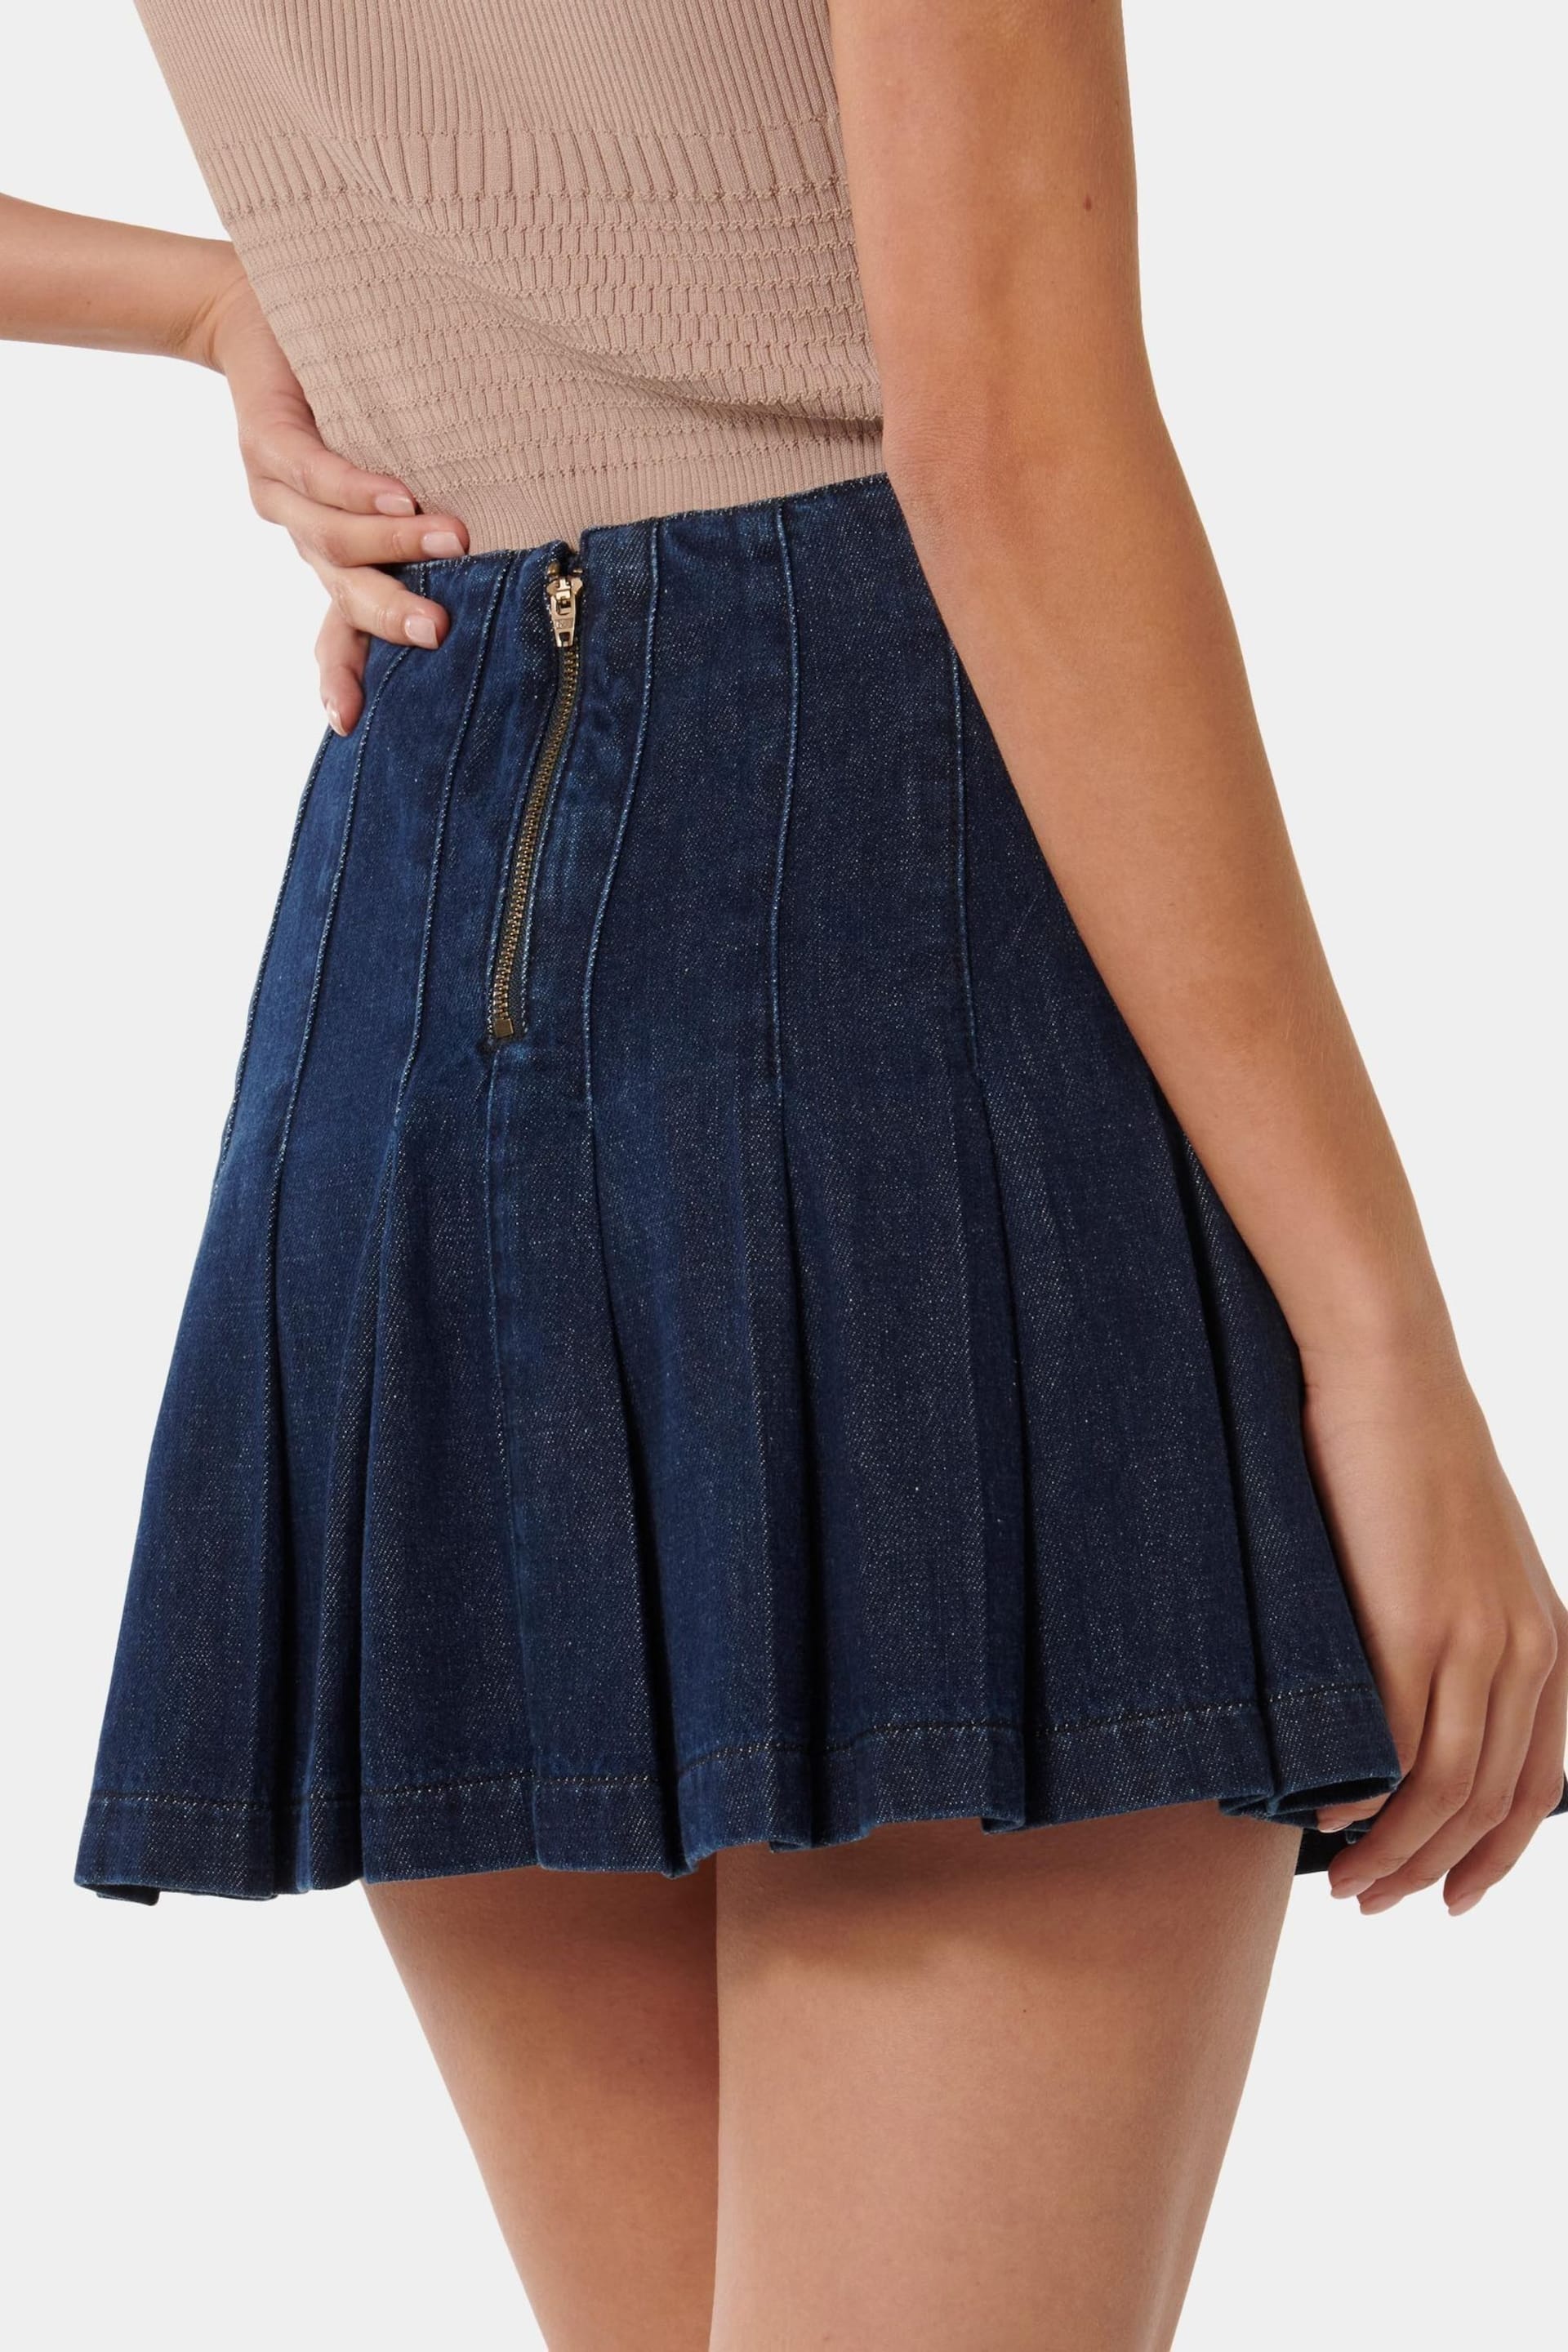 Forever New Blue Chelsea Denim Mini Skirt - Image 4 of 5